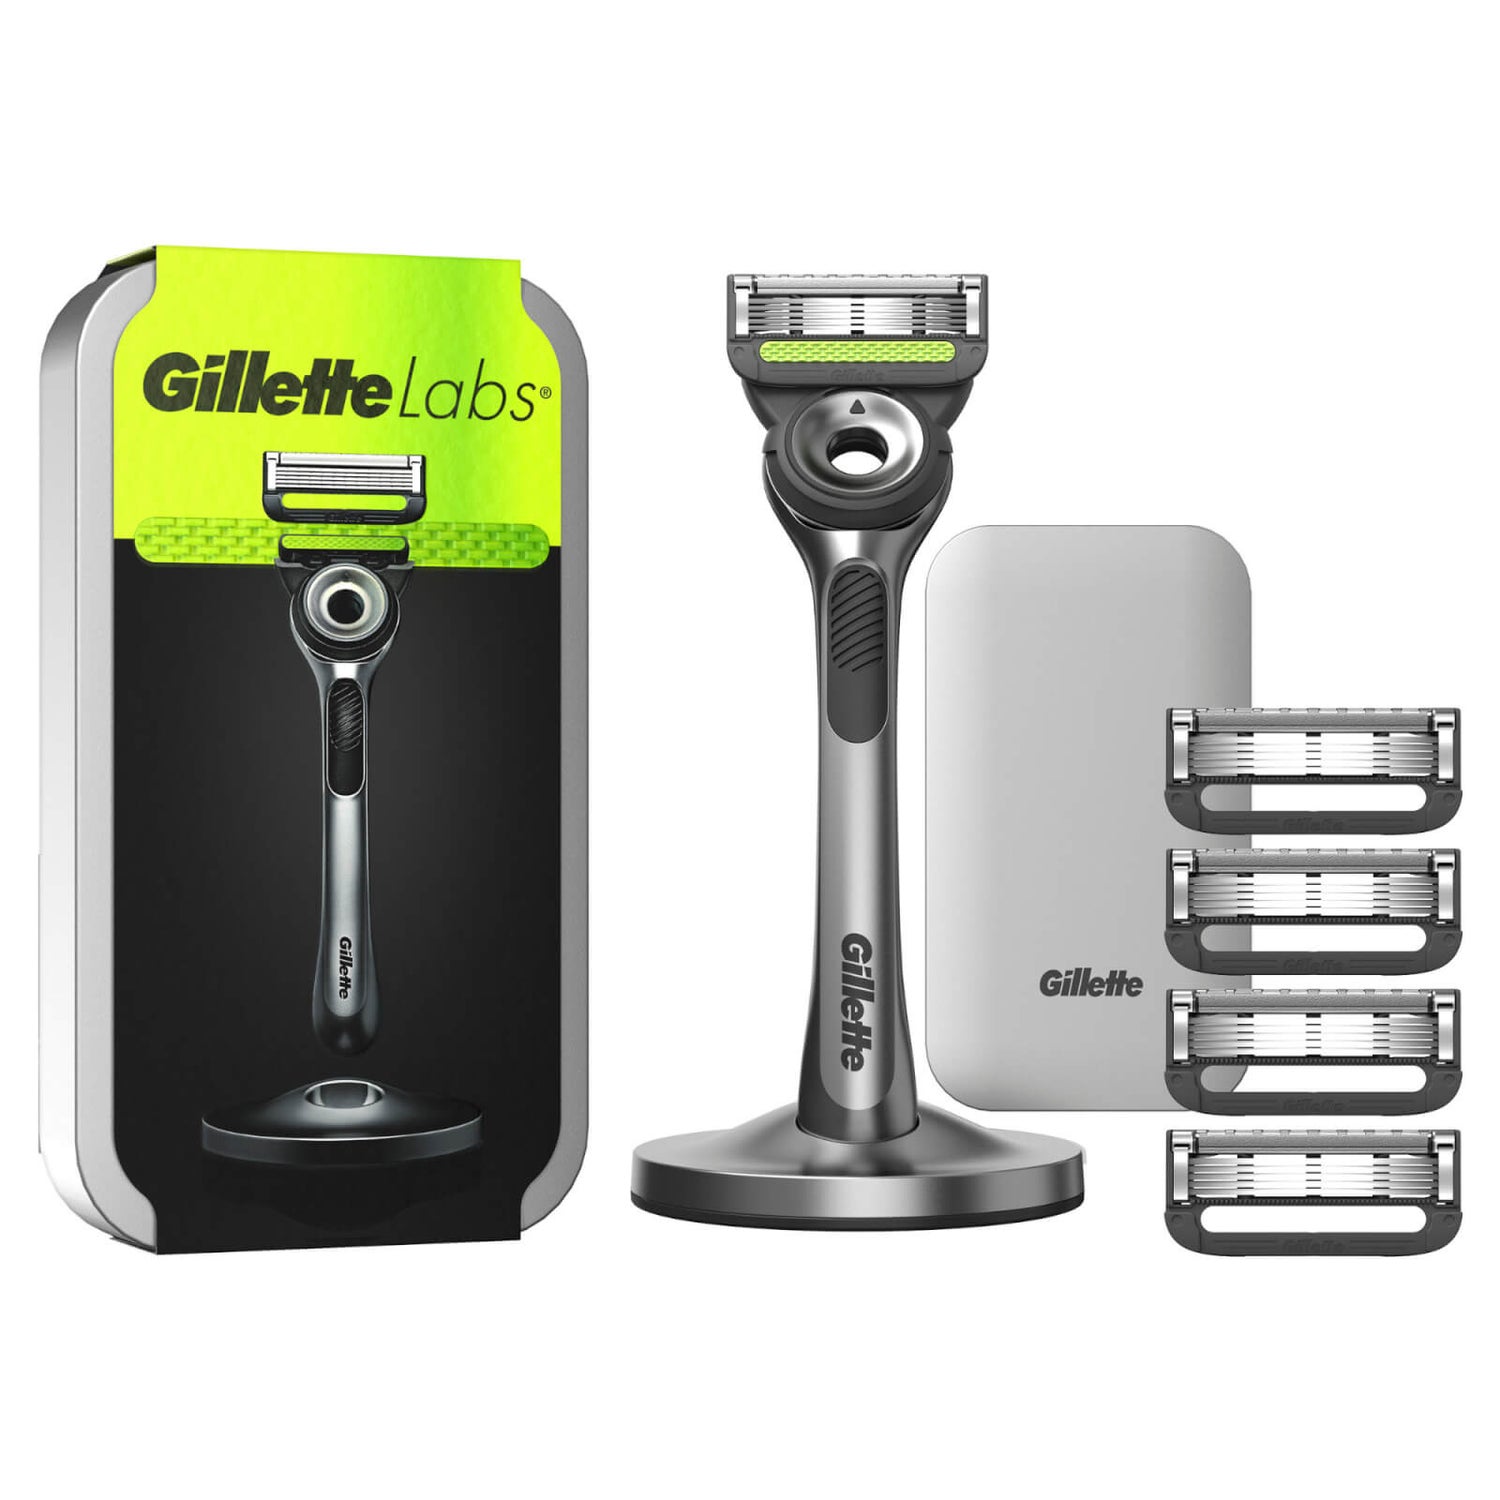 Gillette Labs, Rasierer mit Reinigungs-Element, Reiseetui + 5 Klingen